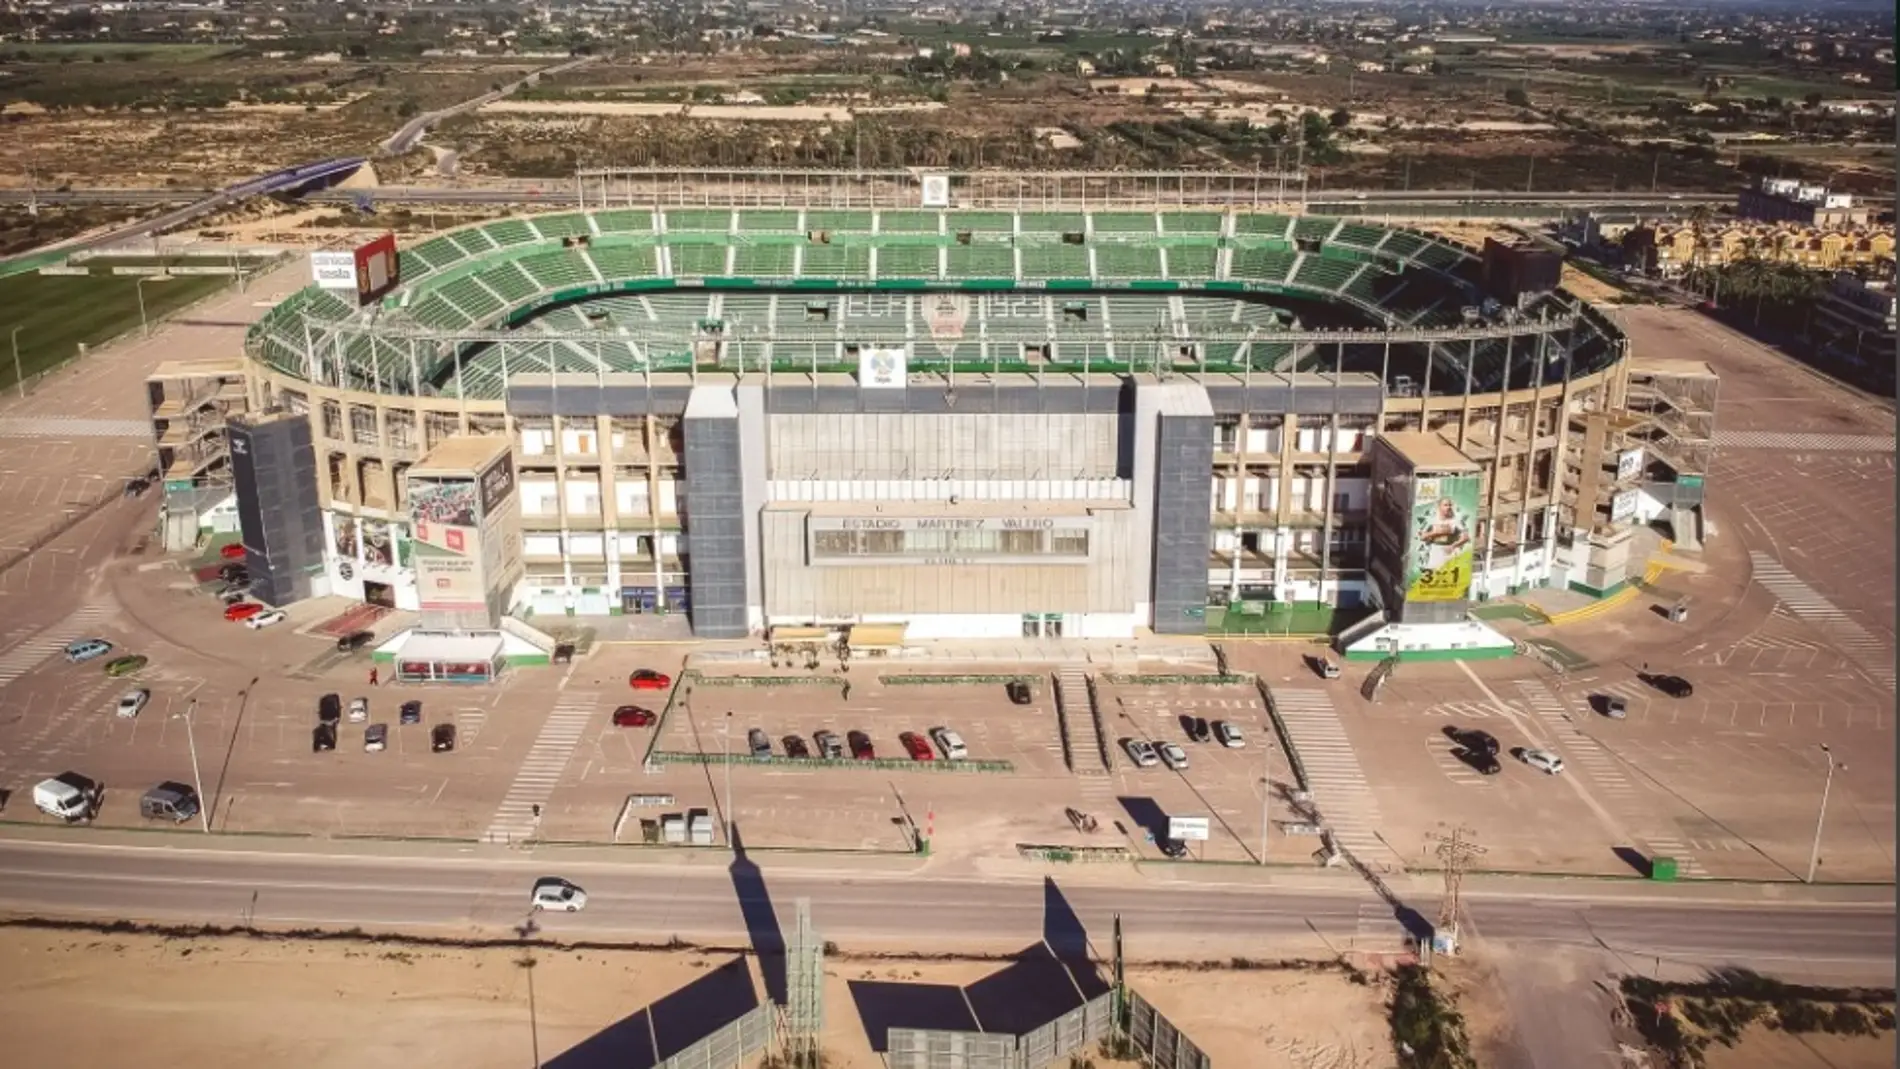 Vista aérea del estadio Martínez Valero de Elche.